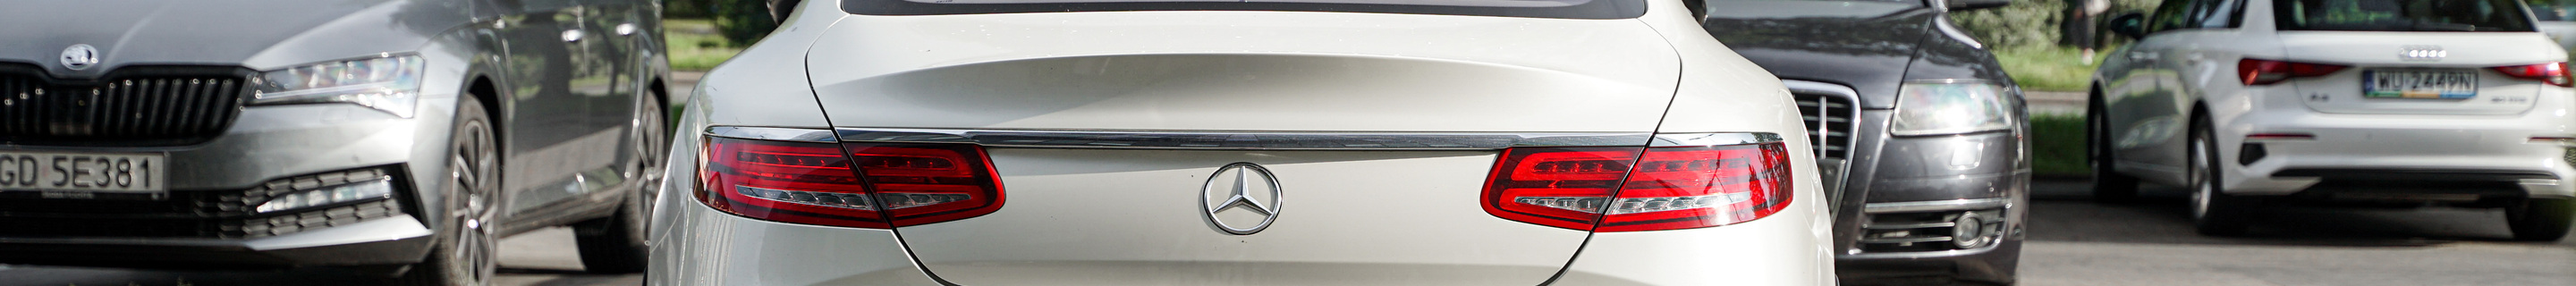 Mercedes-Benz S 63 AMG Coupé C217